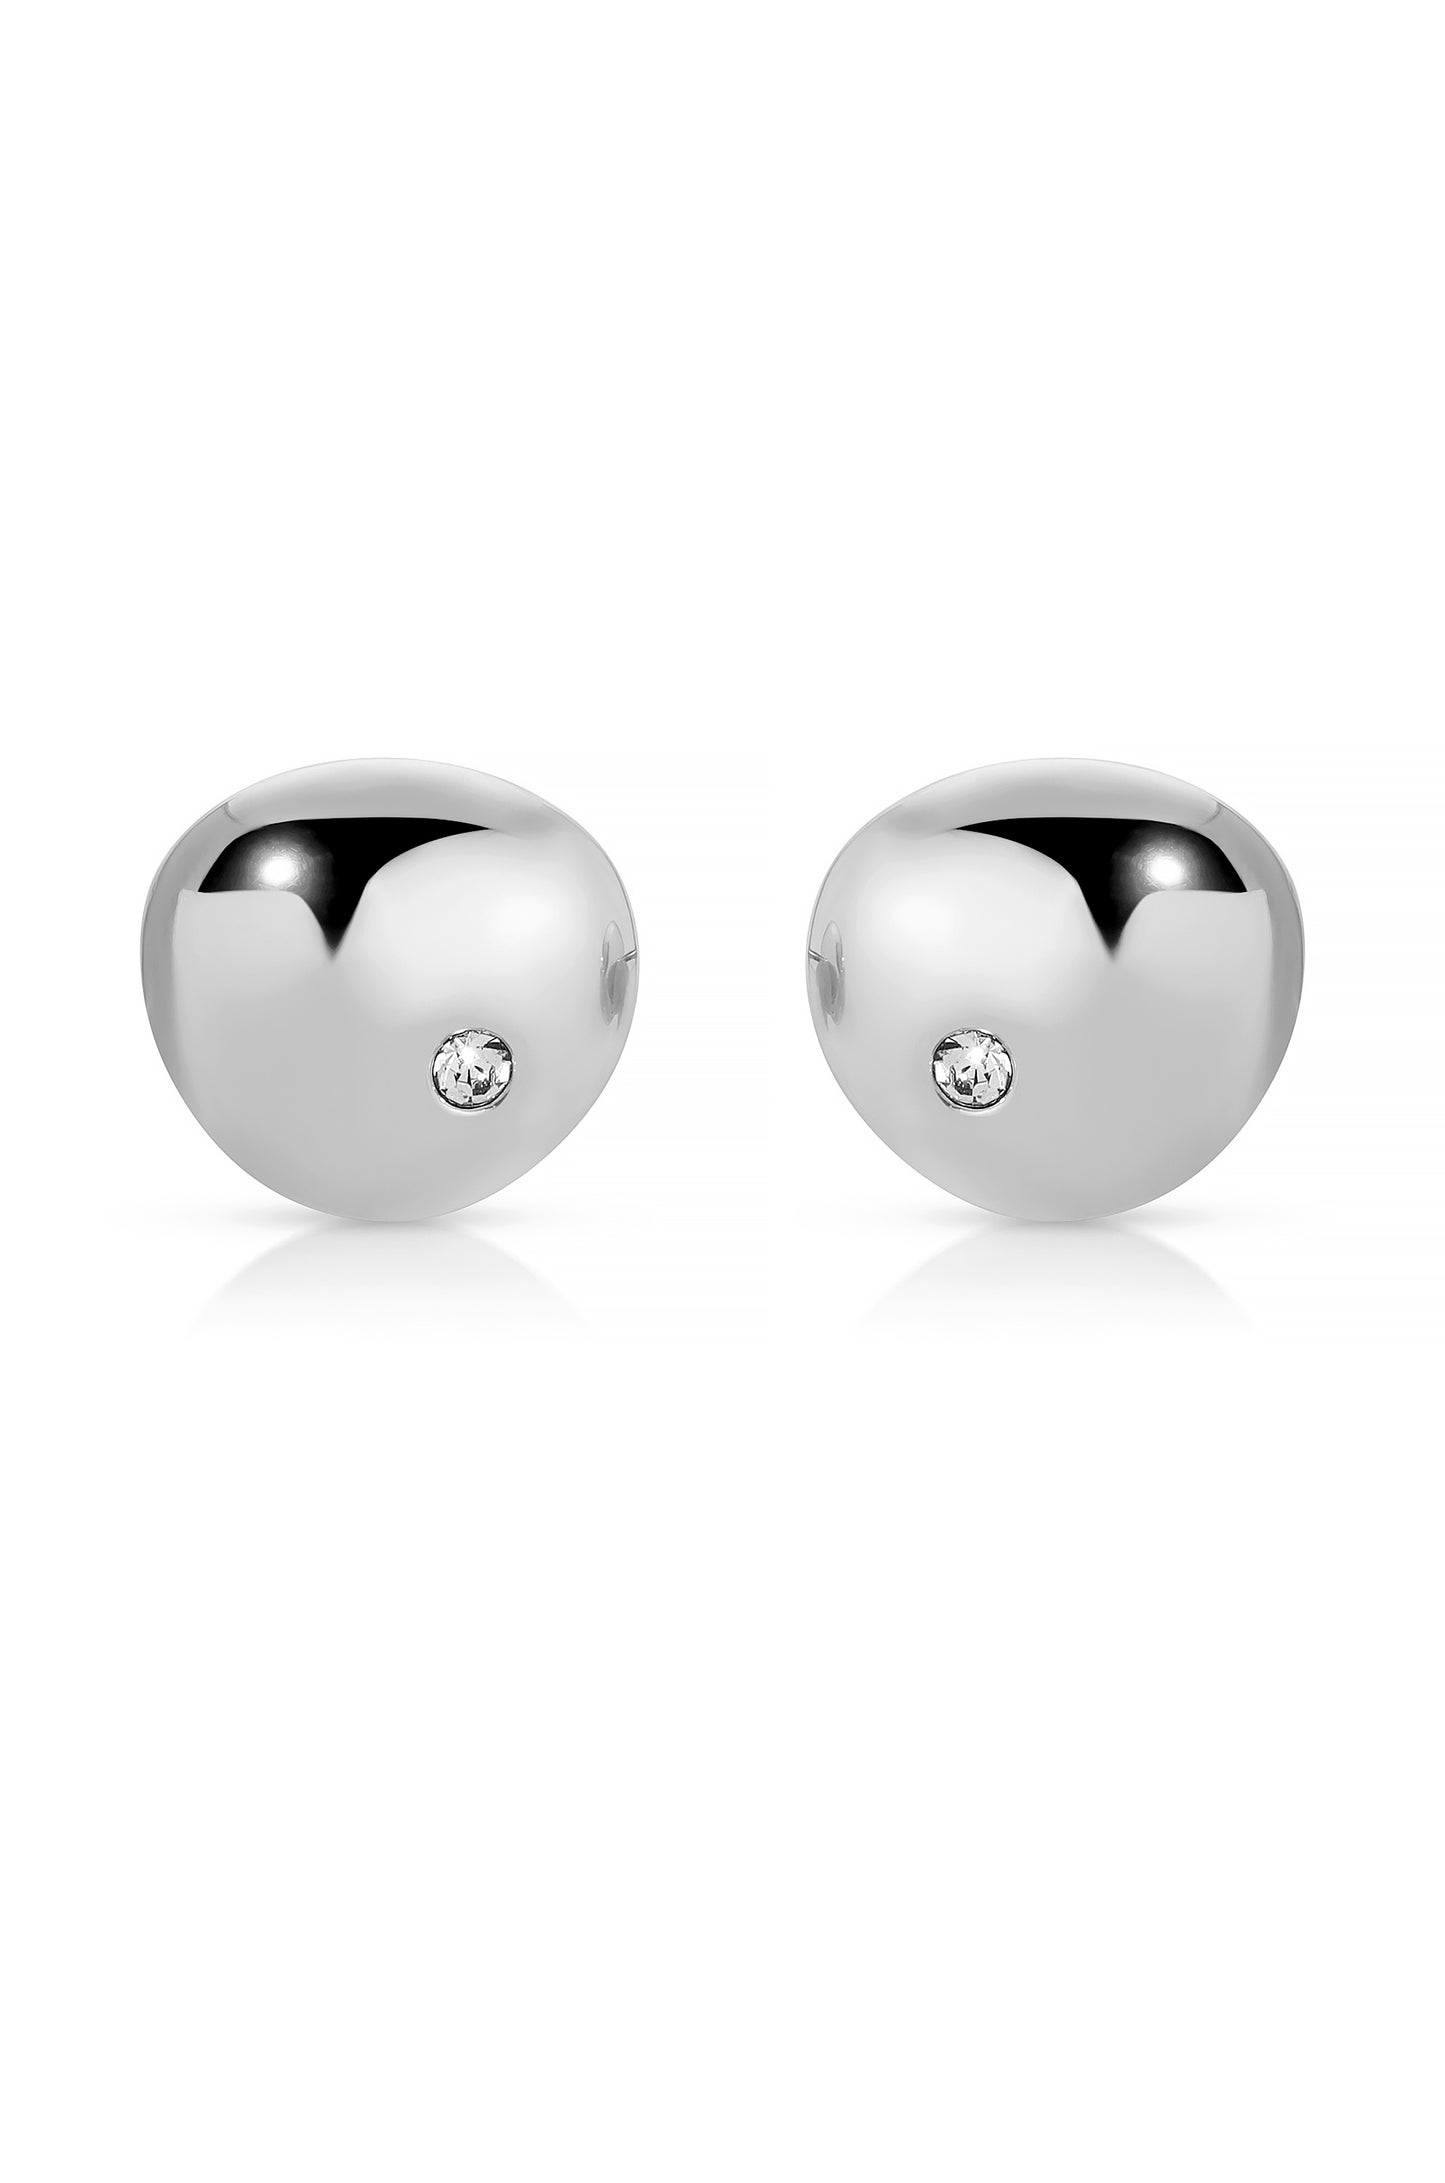 Polished Pebble Single Crystal Stud Earrings rhodium